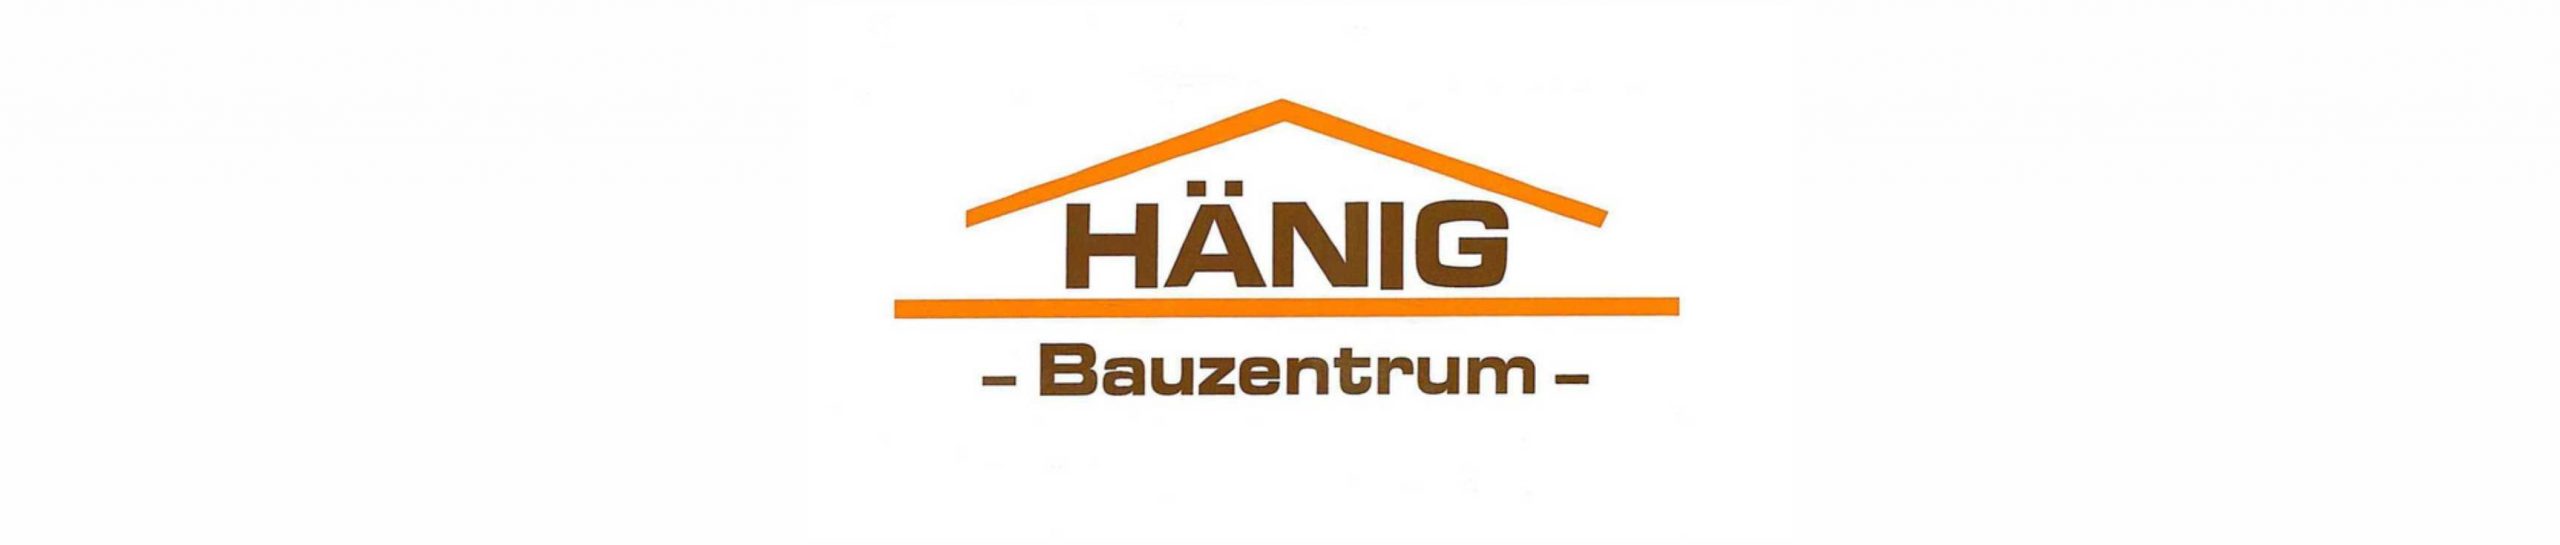 Hänig Bauzentrum GmbH & Co. KG